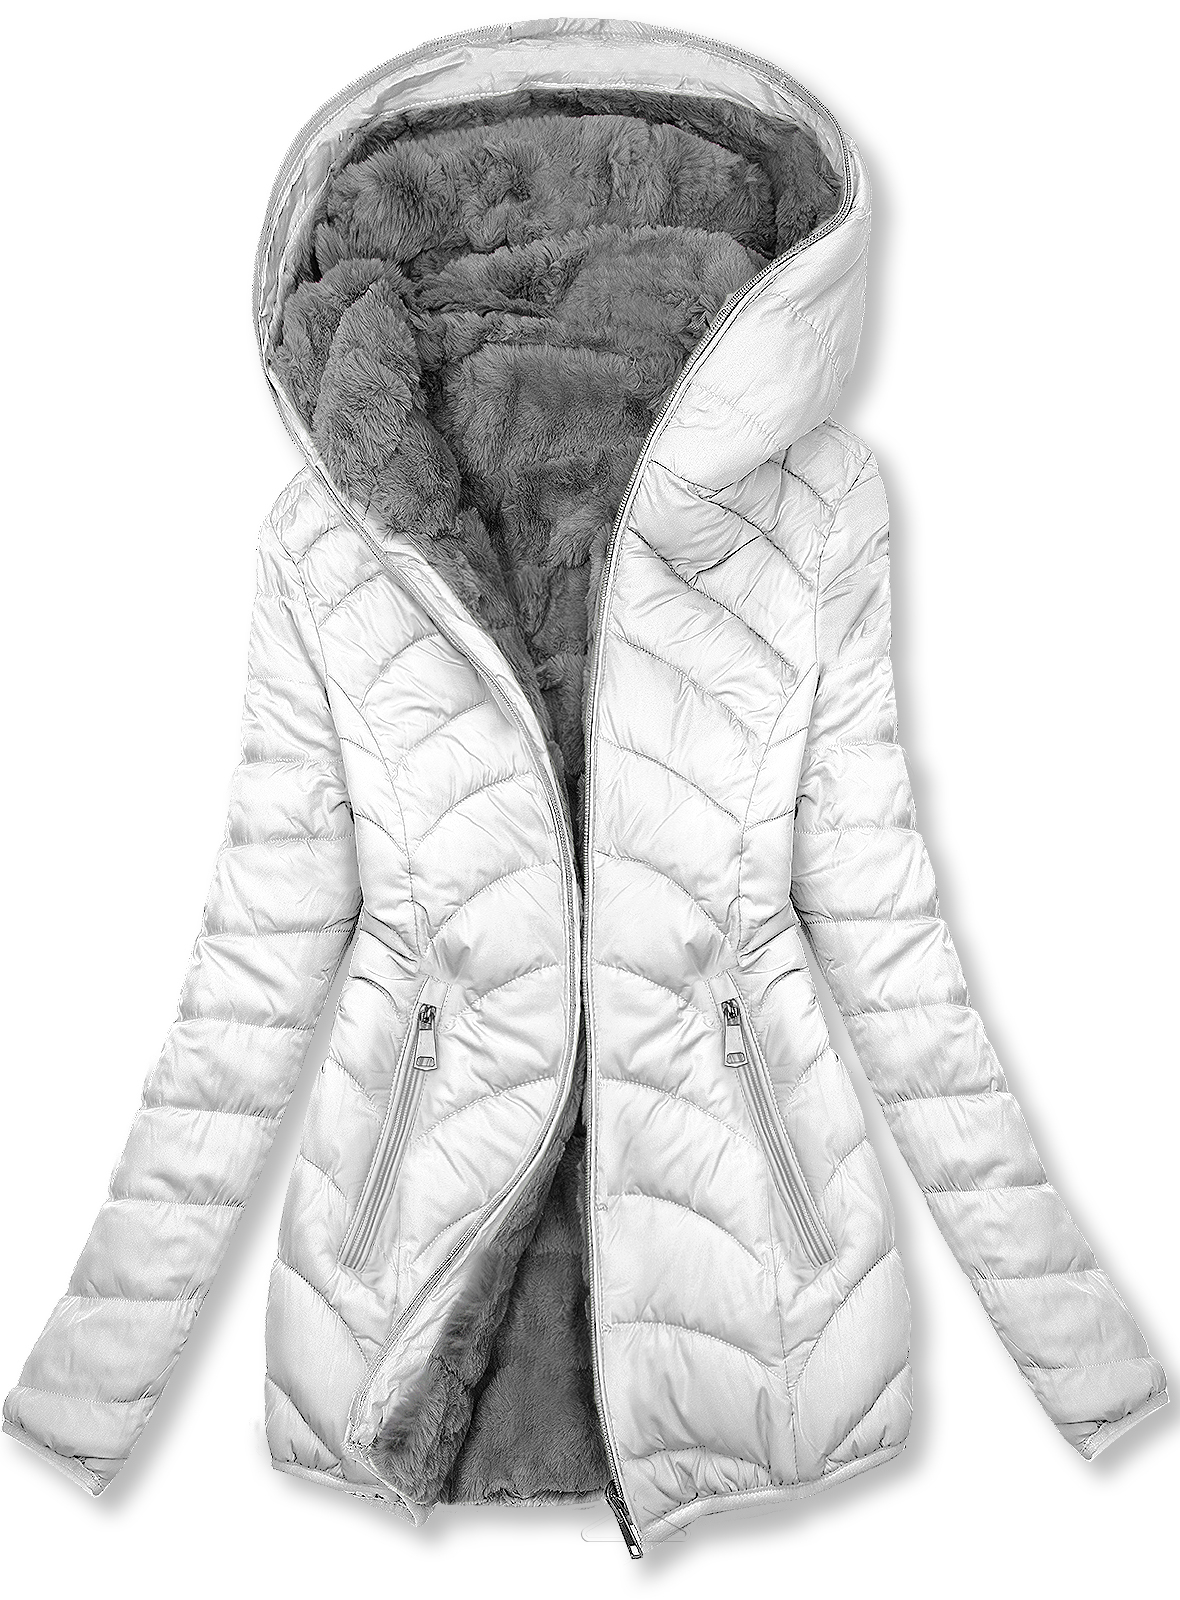 Obojstranná zateplená bunda biela/sivá